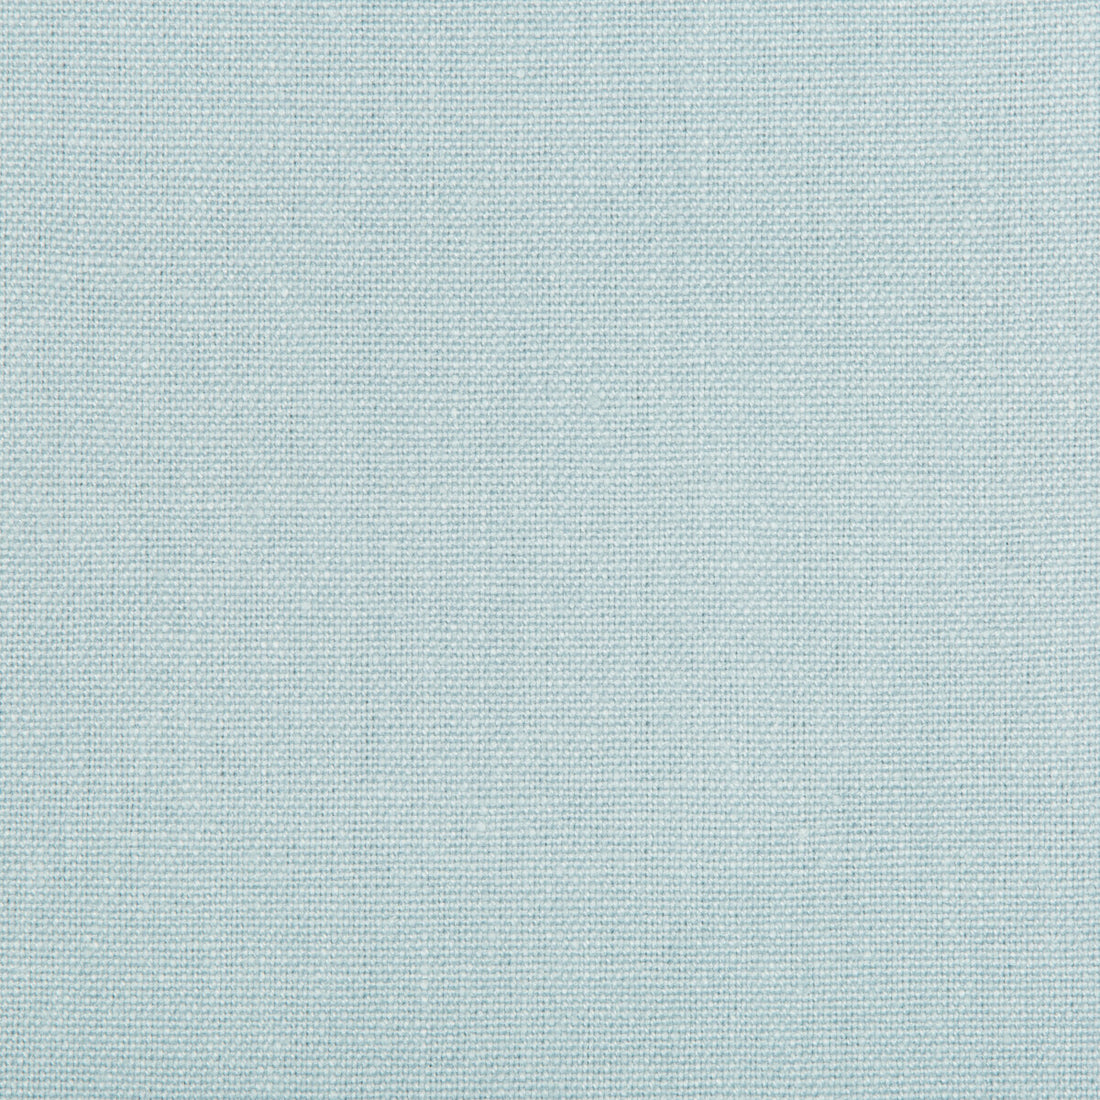 Kravet Basics fabric in 30421-15 color - pattern 30421.15.0 - by Kravet Basics